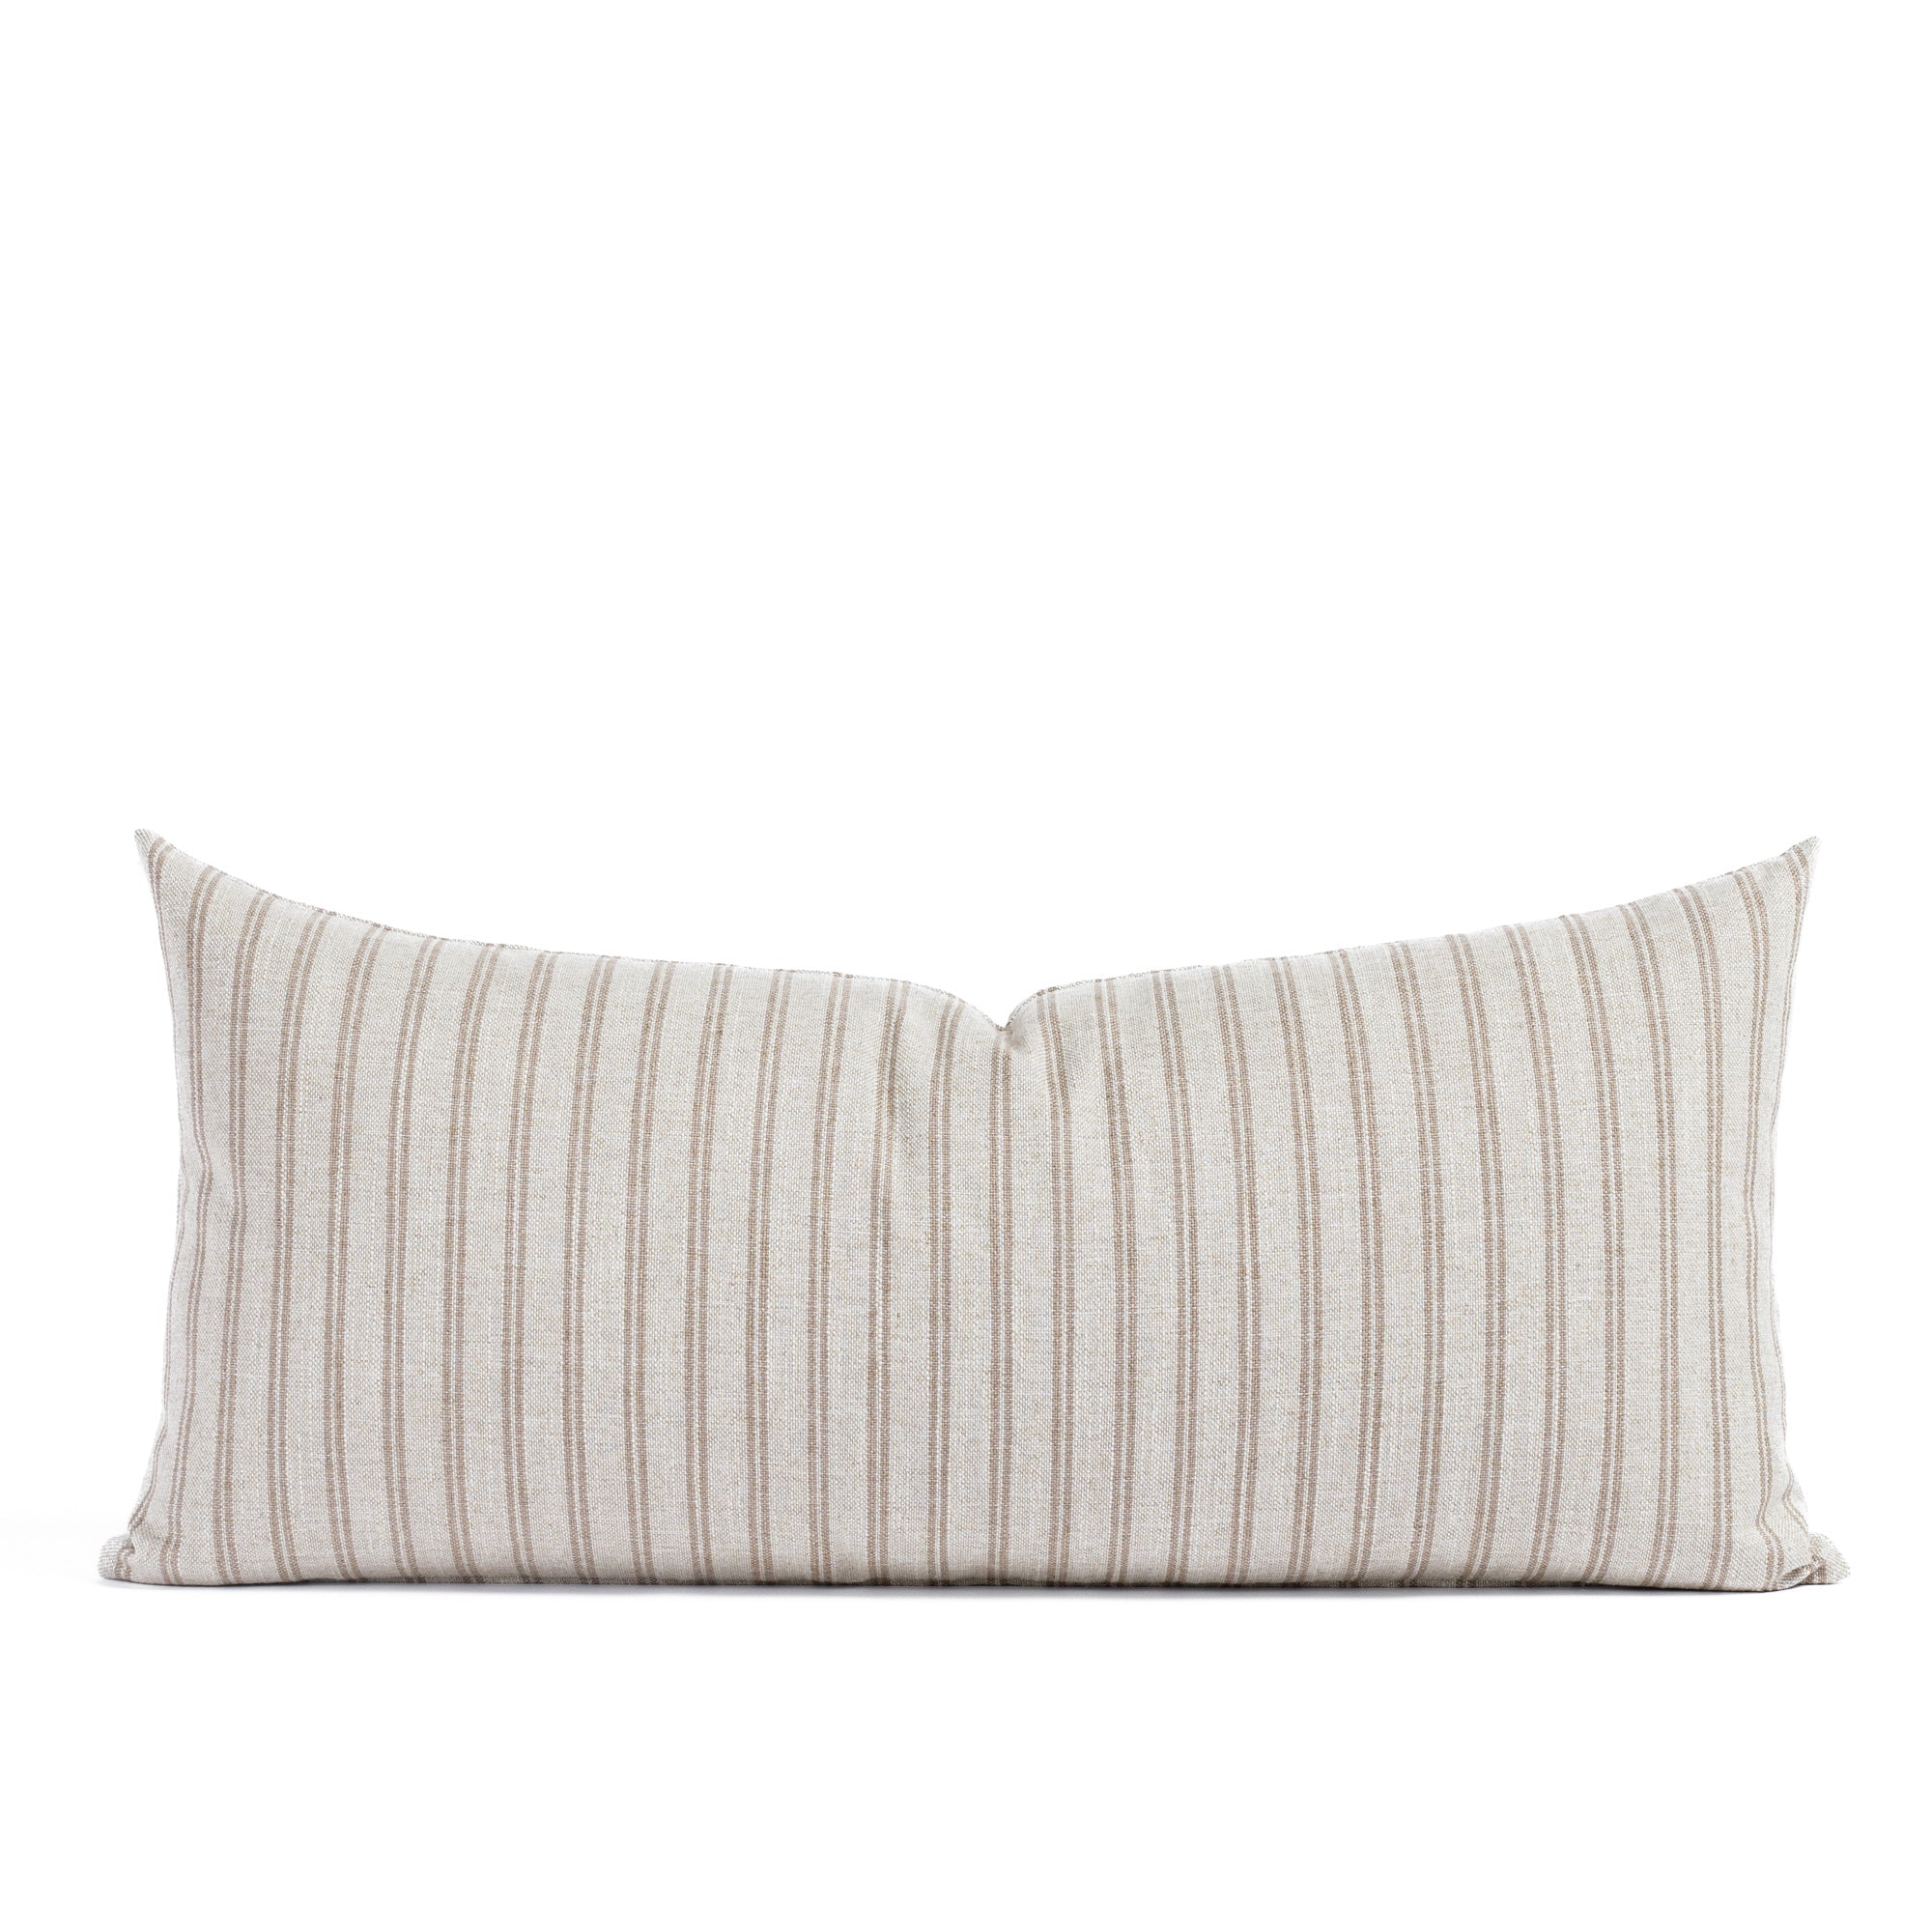 Conway 15x32 XL lumbar pillow Pecan, a cream and brown stripe extra long lumbar pillow from Tonic Living